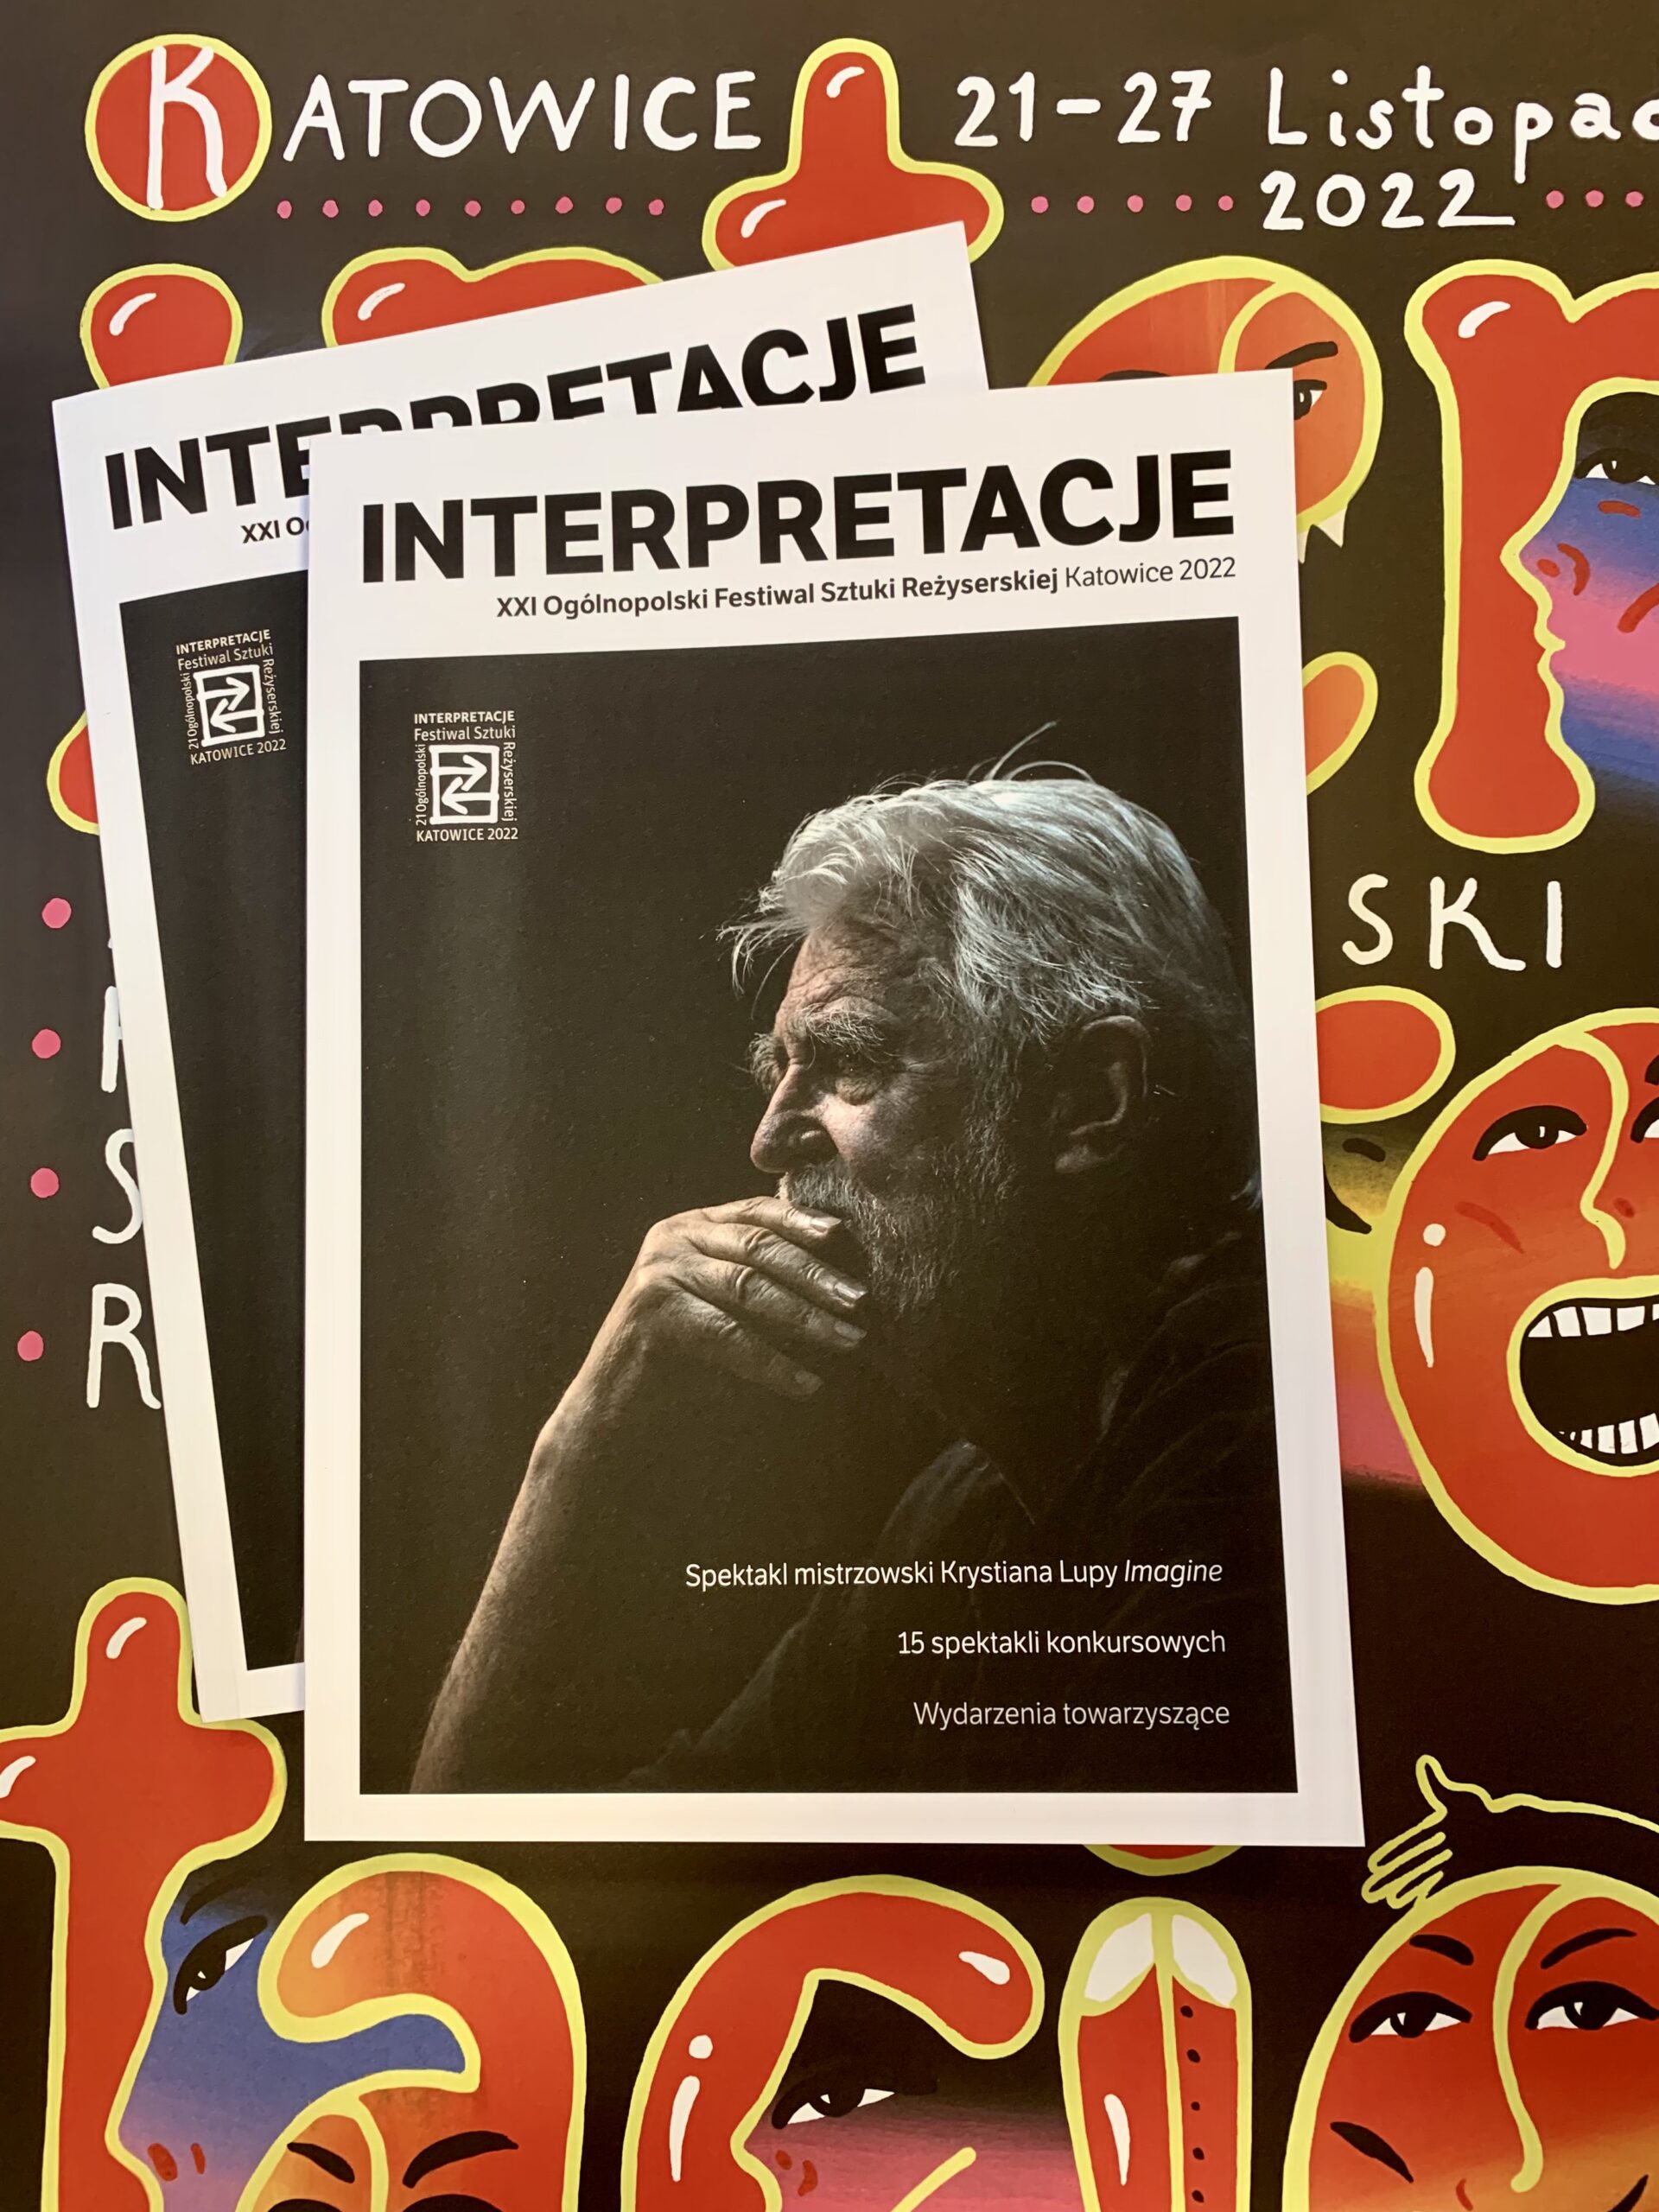 Katalog XXI edycji Festiwalu Interpretacje